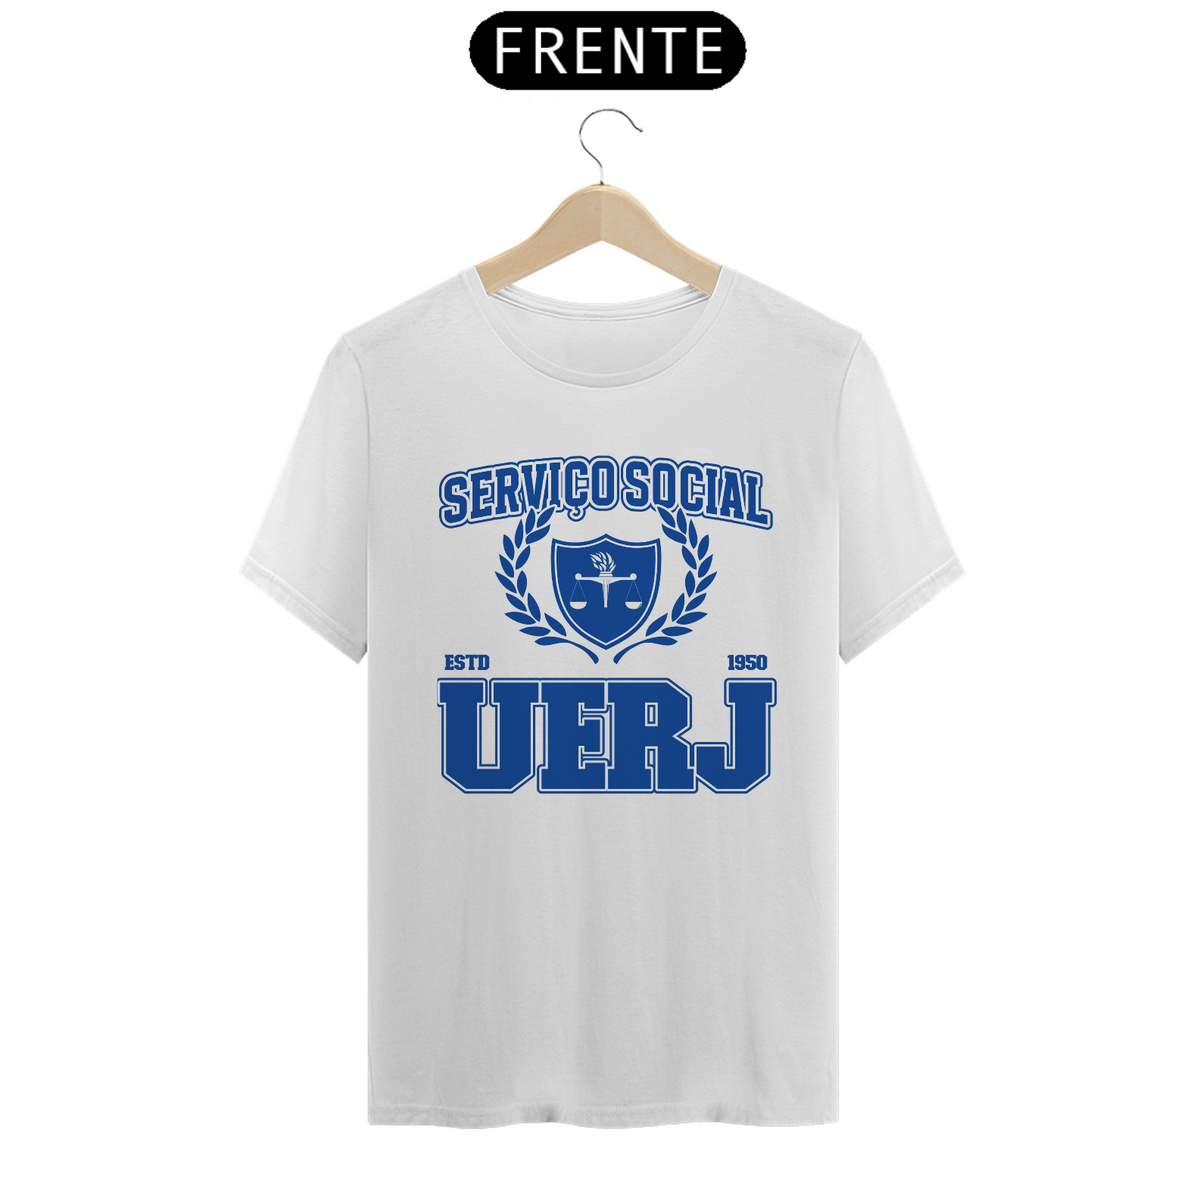 Nome do produto: UniVerso- Serviço Social Uerj